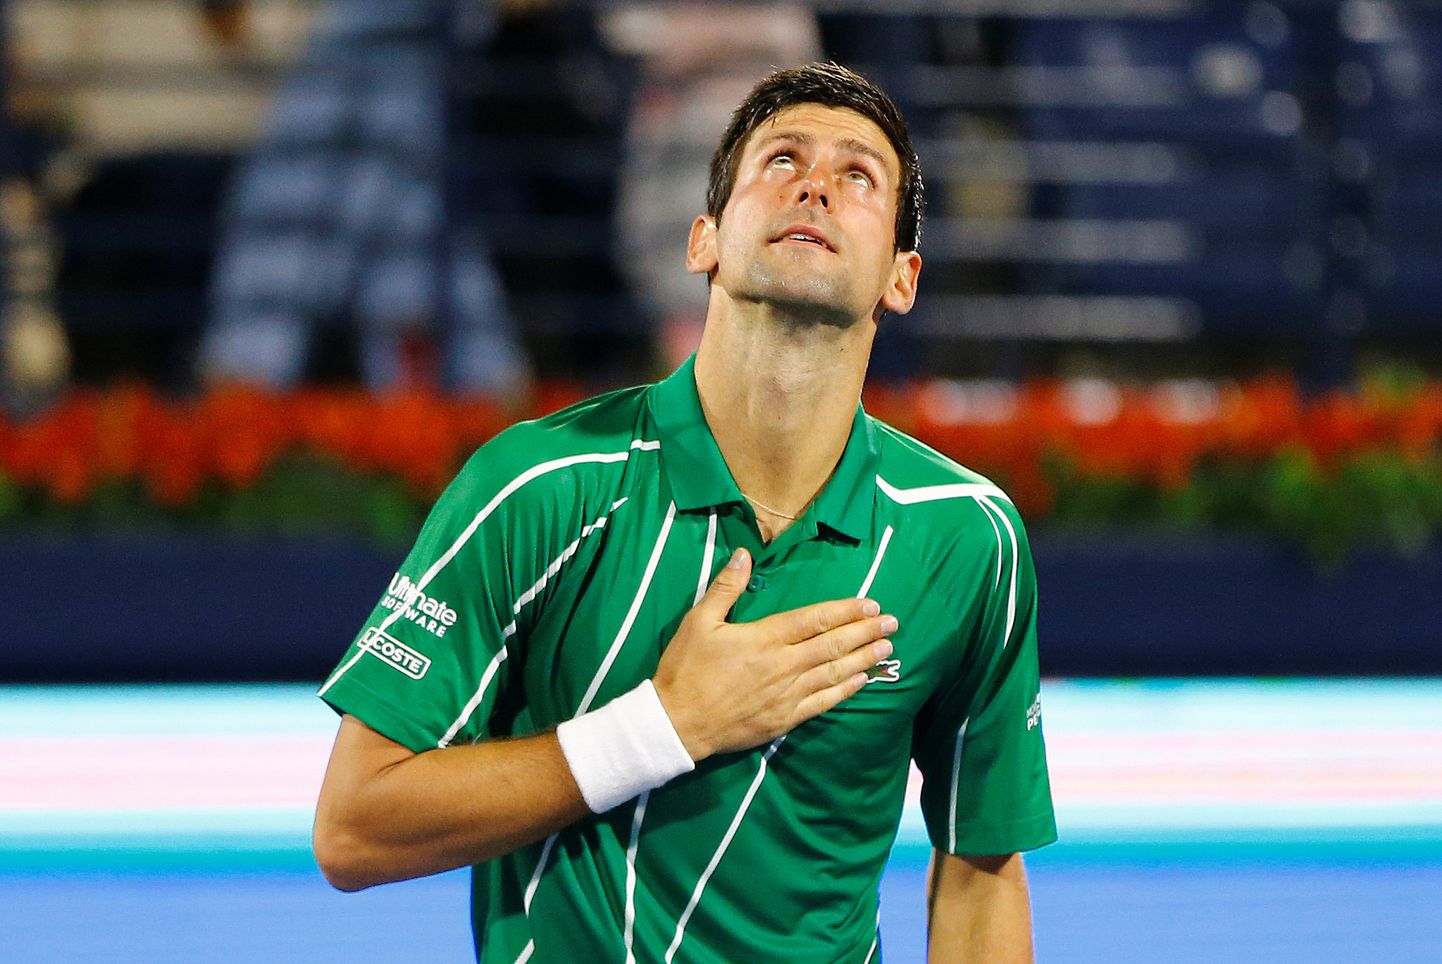 Pärast igat matši tänab Djokovic Jumalat. Foto on tehtud Dubais 28. veebruaril pärast mängu prantslase Gael Monfilsiga.